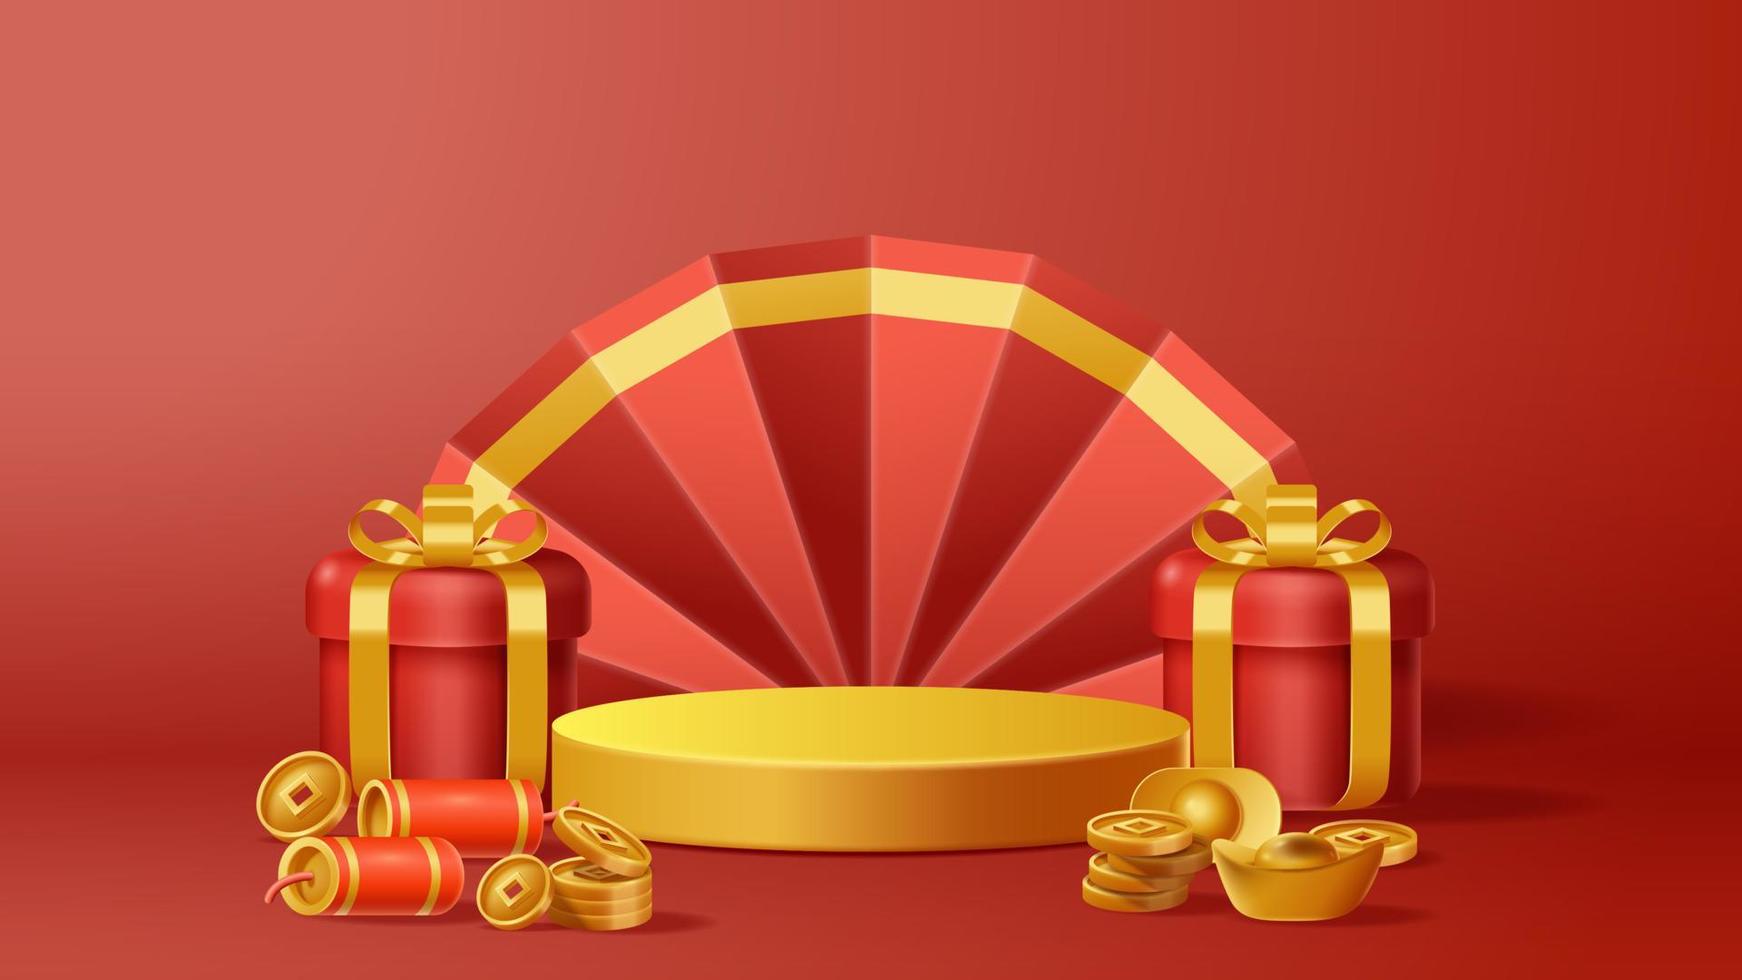 Cinese nuovo anno Schermo podio decorazione sfondo con Cinese ornamento. vettore 3d illustrazione